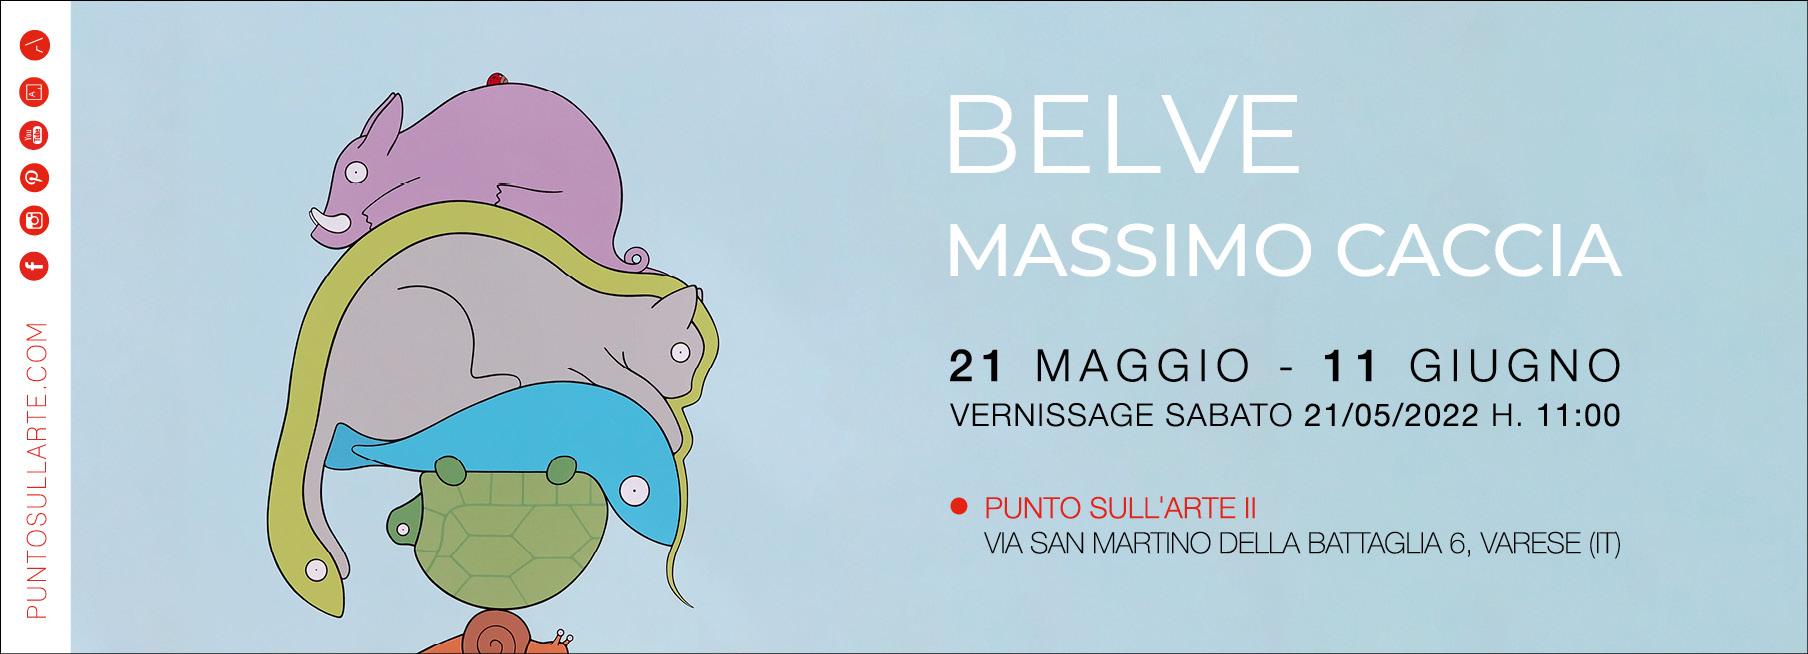 BELVE | Massimo Caccia